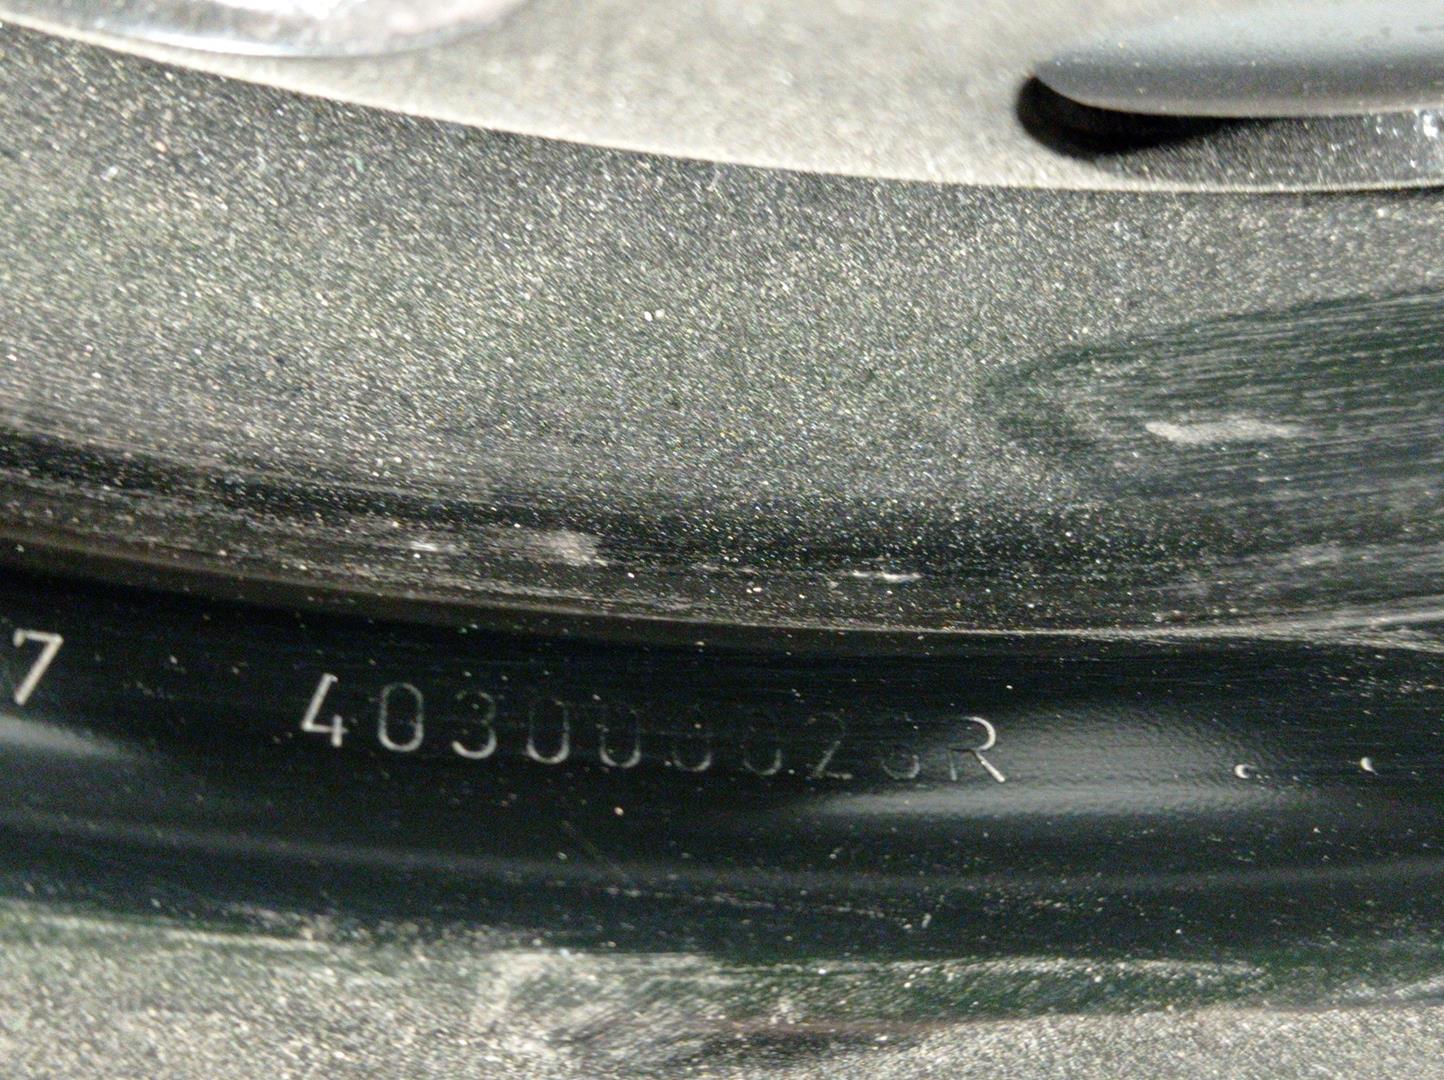 RENAULT Megane 3 generation (2008-2020) Wheel 403000026R, R1561/2J15H2HET43, HIERRO 24535521